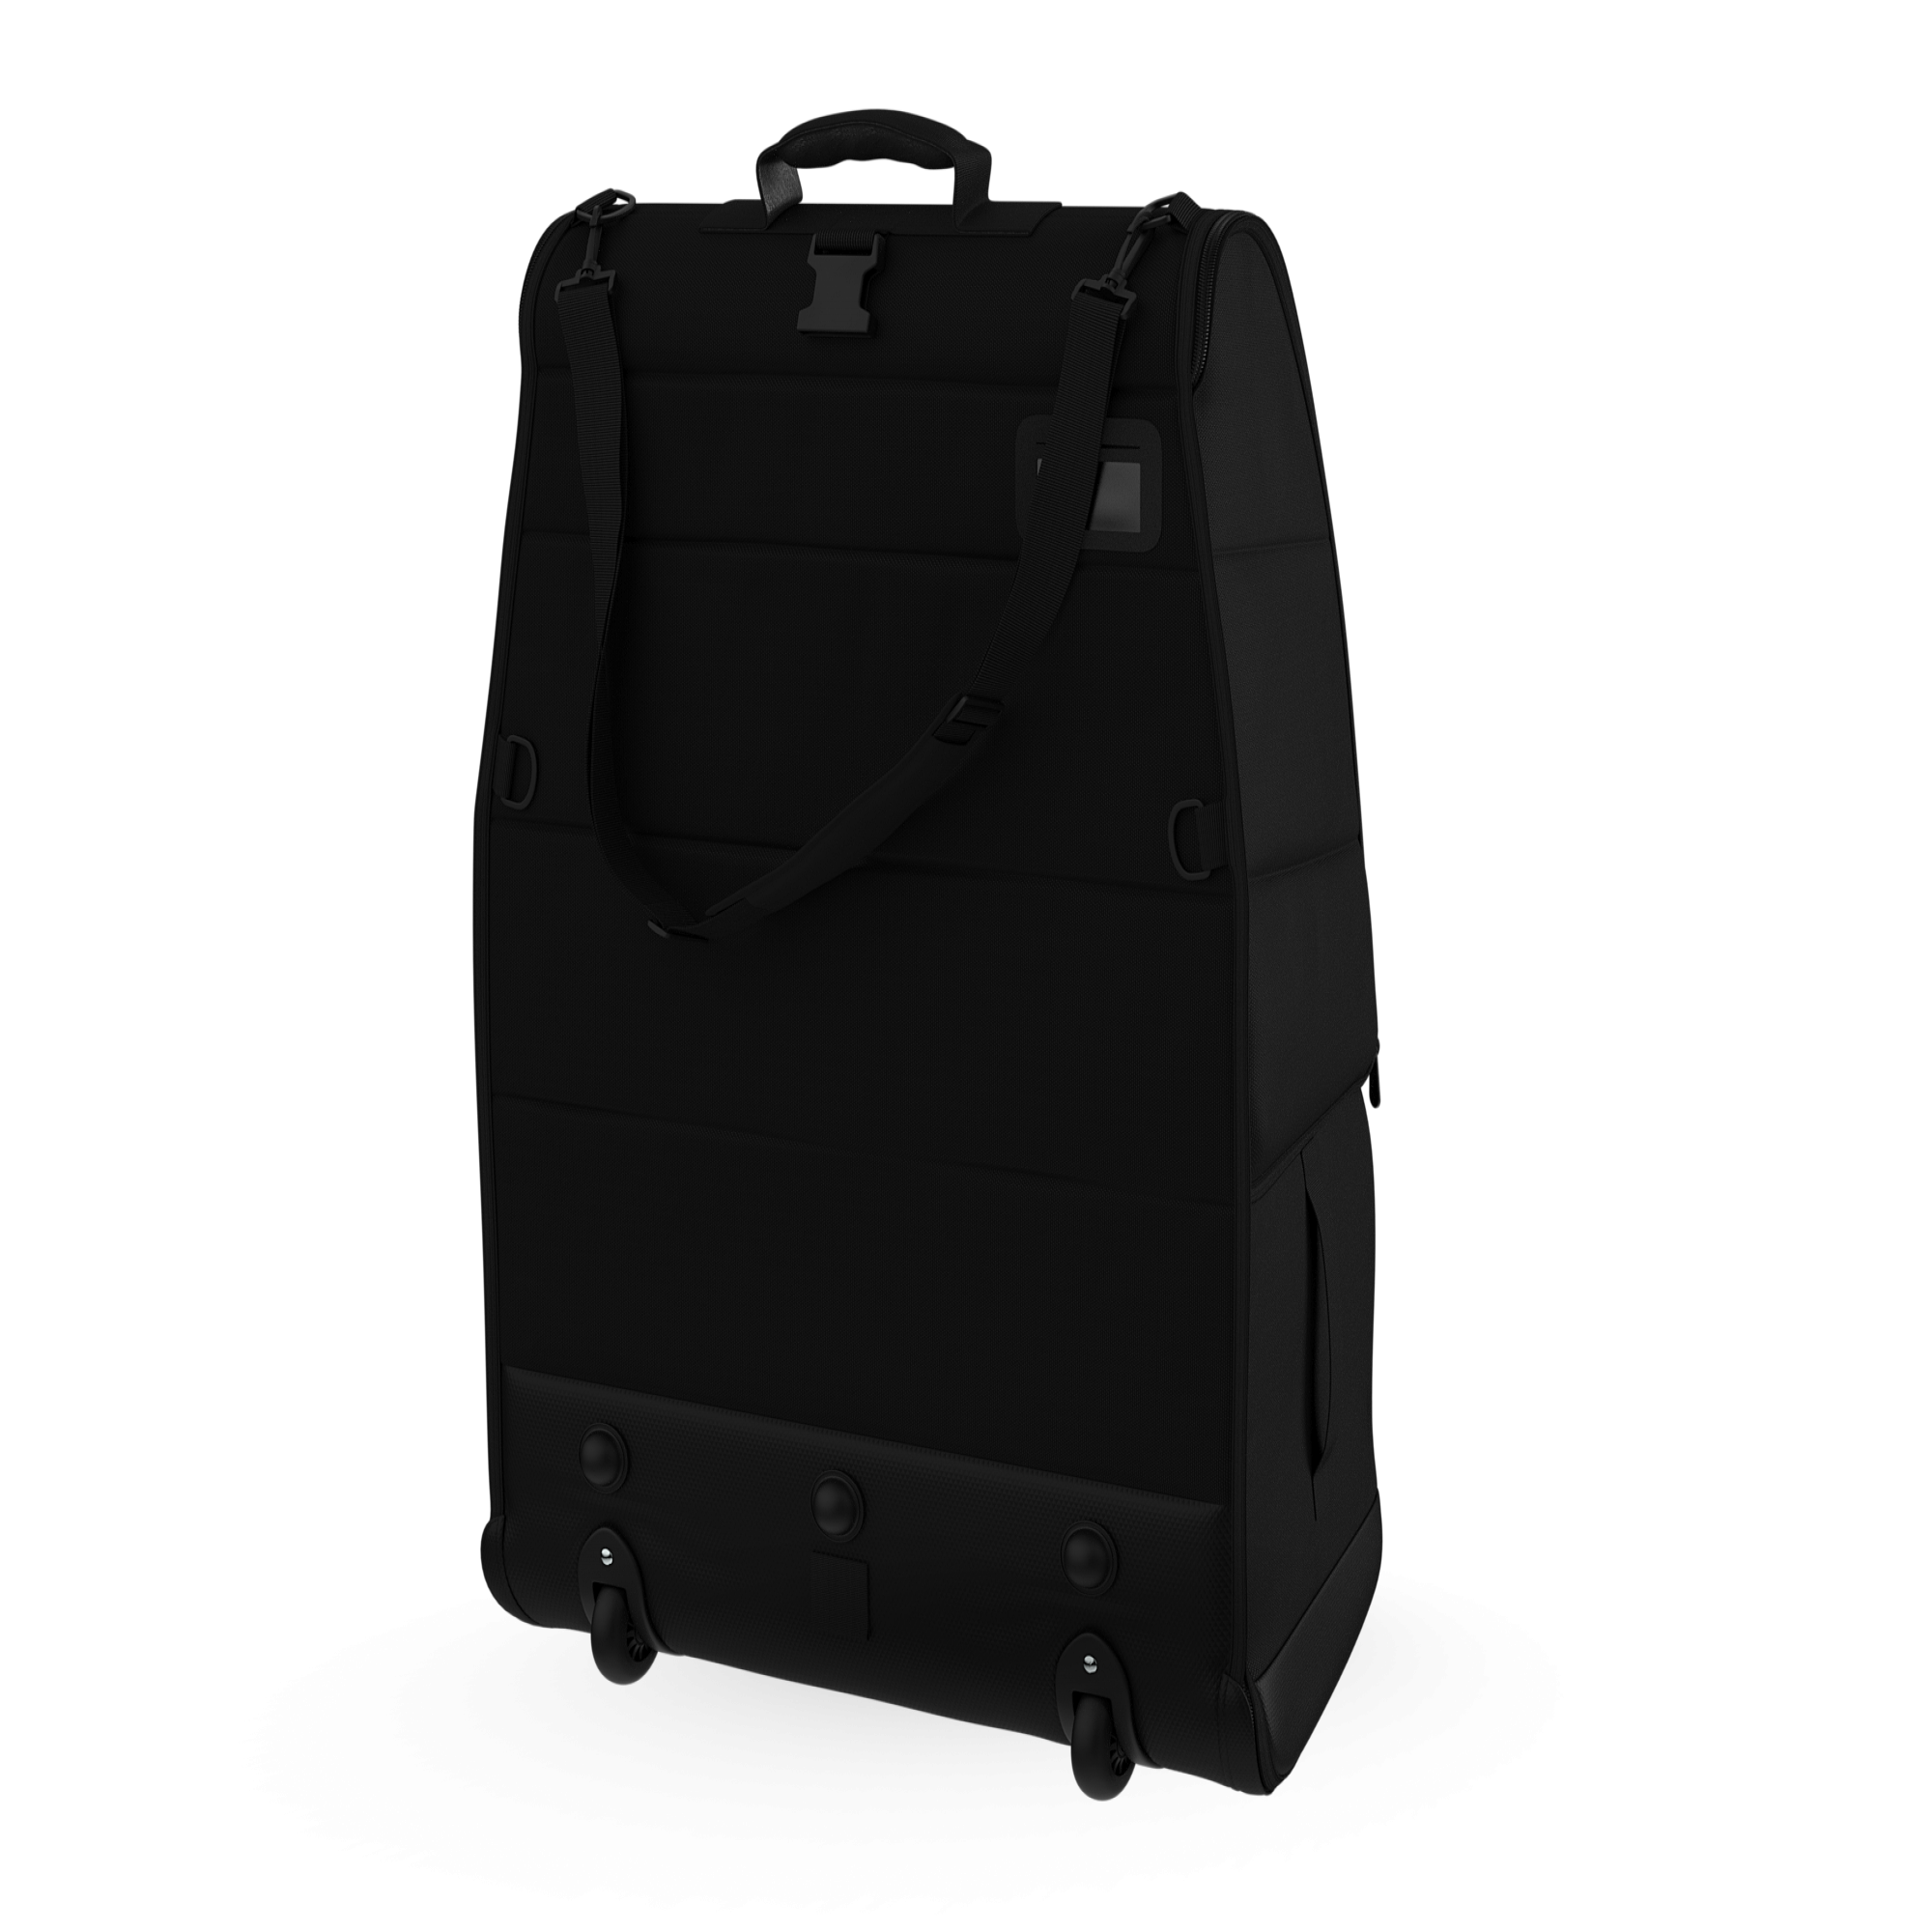 Bugaboo comfort transport bag Black